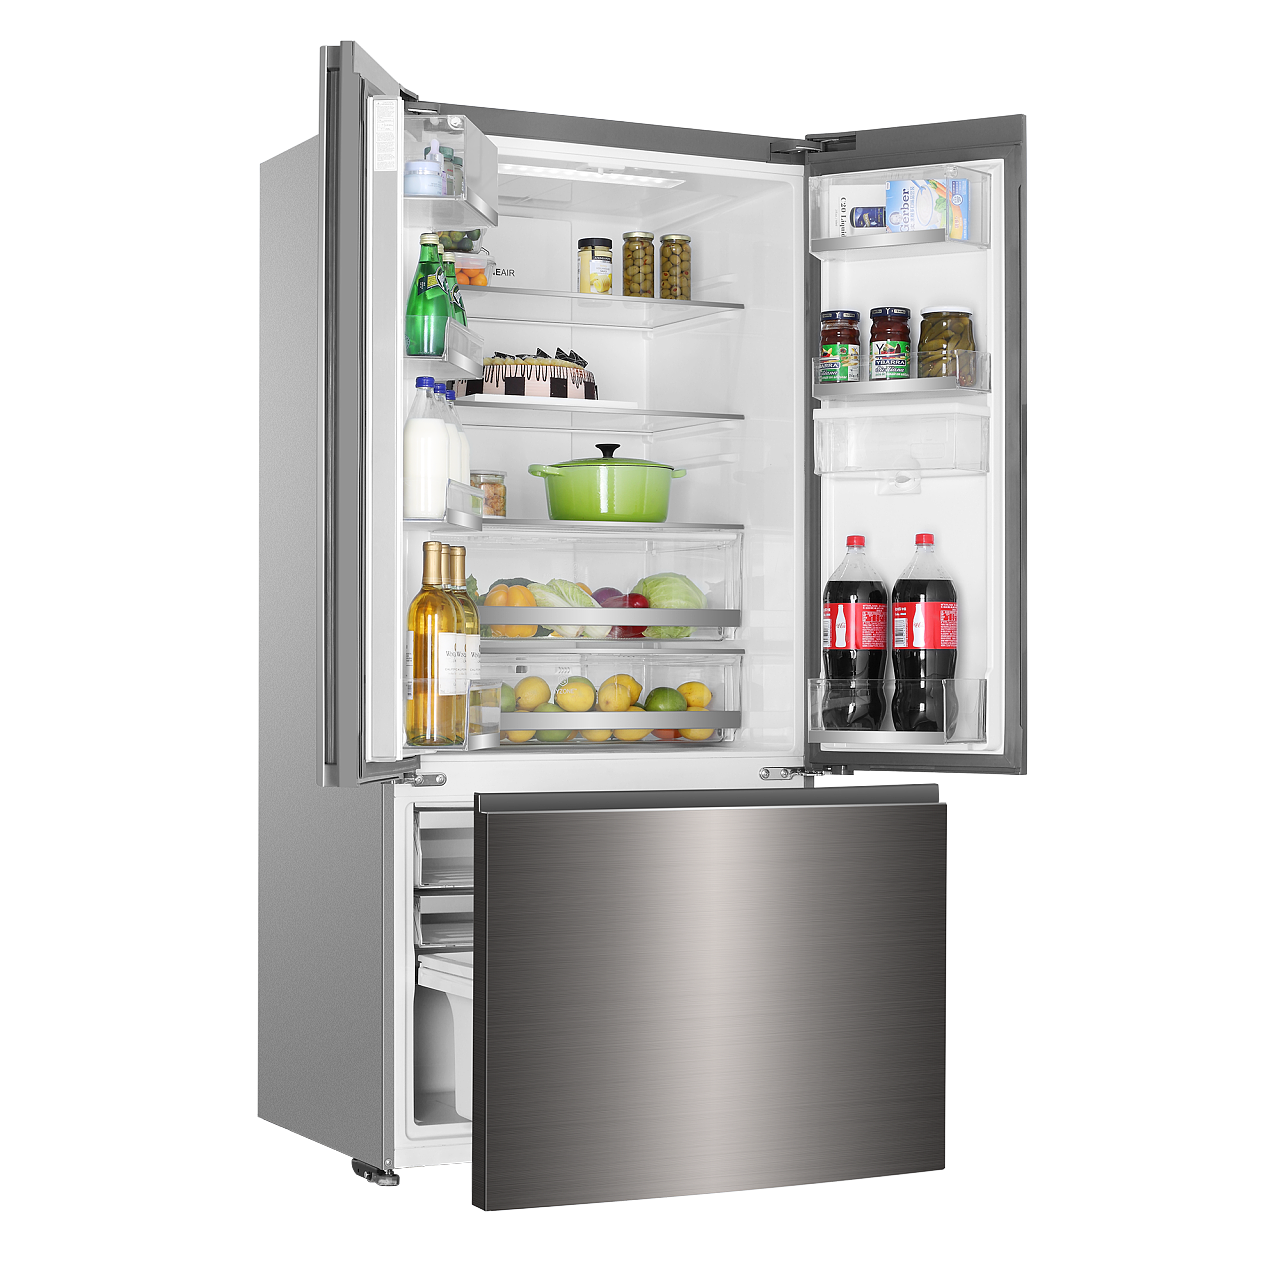 让冰箱有序不串味 - 设计师1605设计效果图 - 每平每屋·设计家